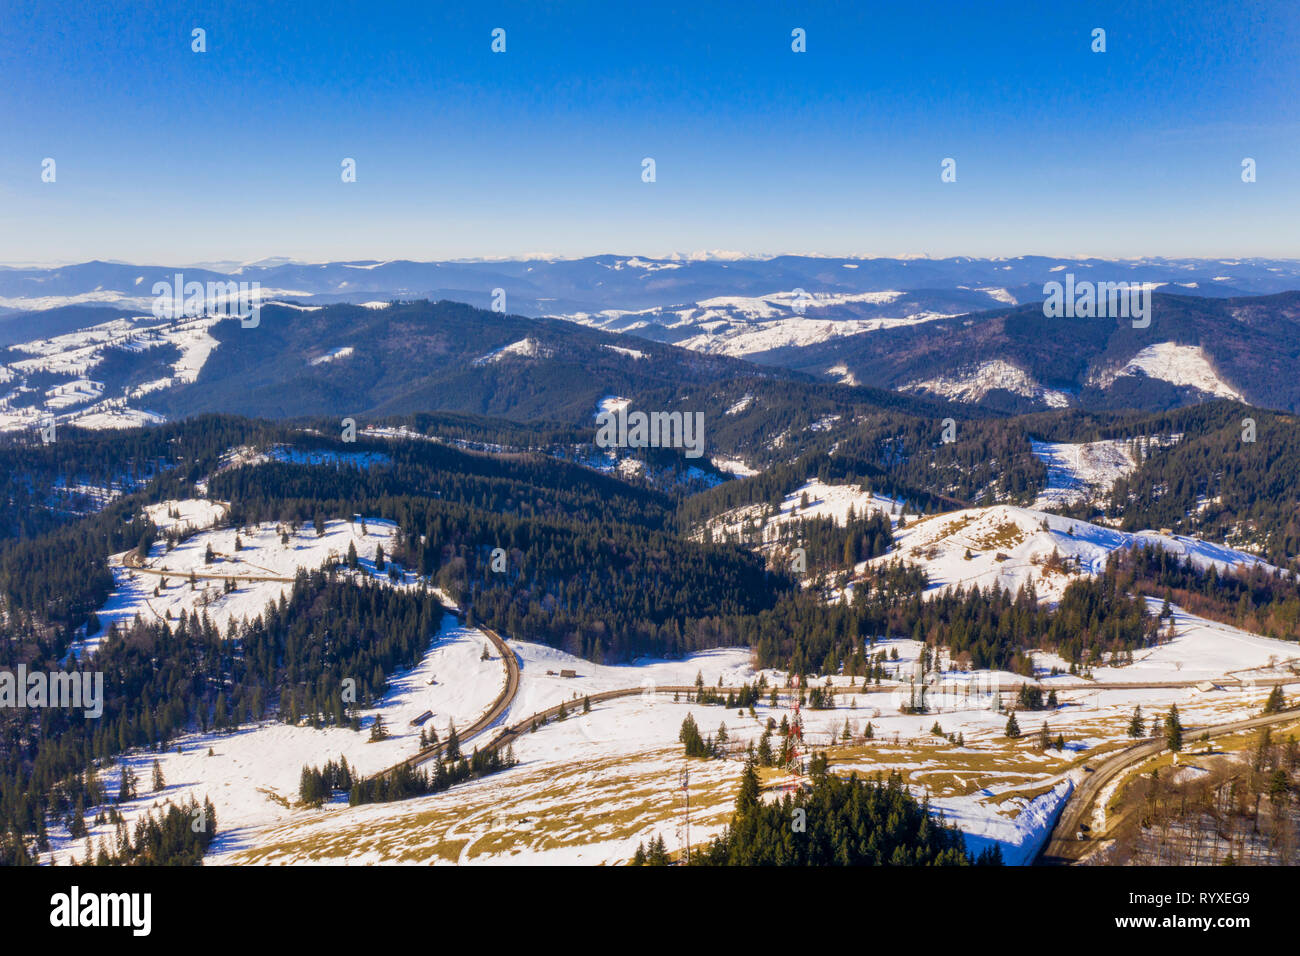 Forêt et route sinueuse dans un paysage d'hiver, vue aérienne Banque D'Images